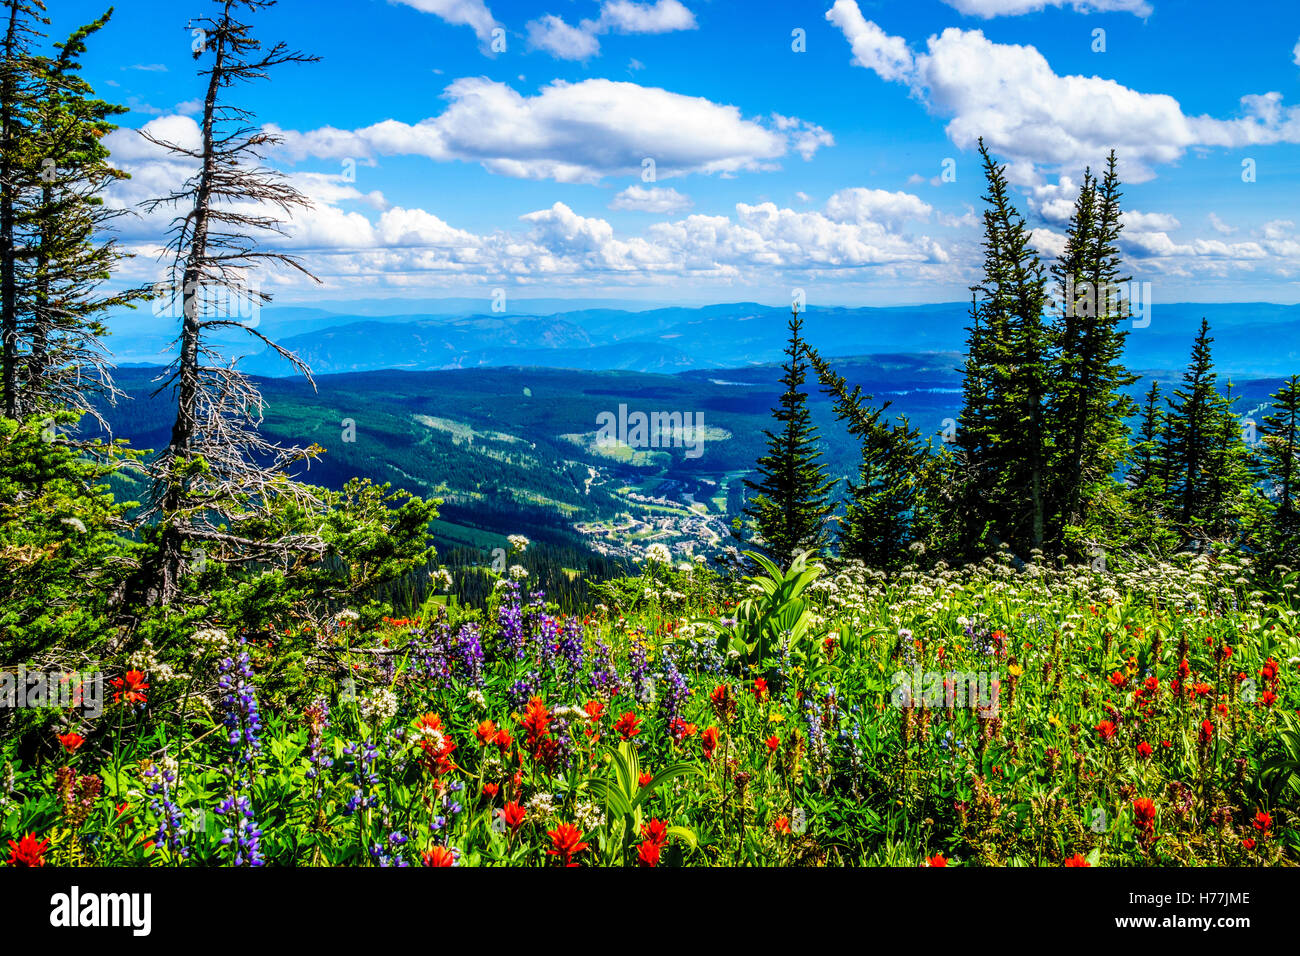 Randonnée à travers les alpages de montagne avec des fleurs sauvages sur les TSD Montagne dans les hautes terres de Shuswap, British Columbia Canada Banque D'Images